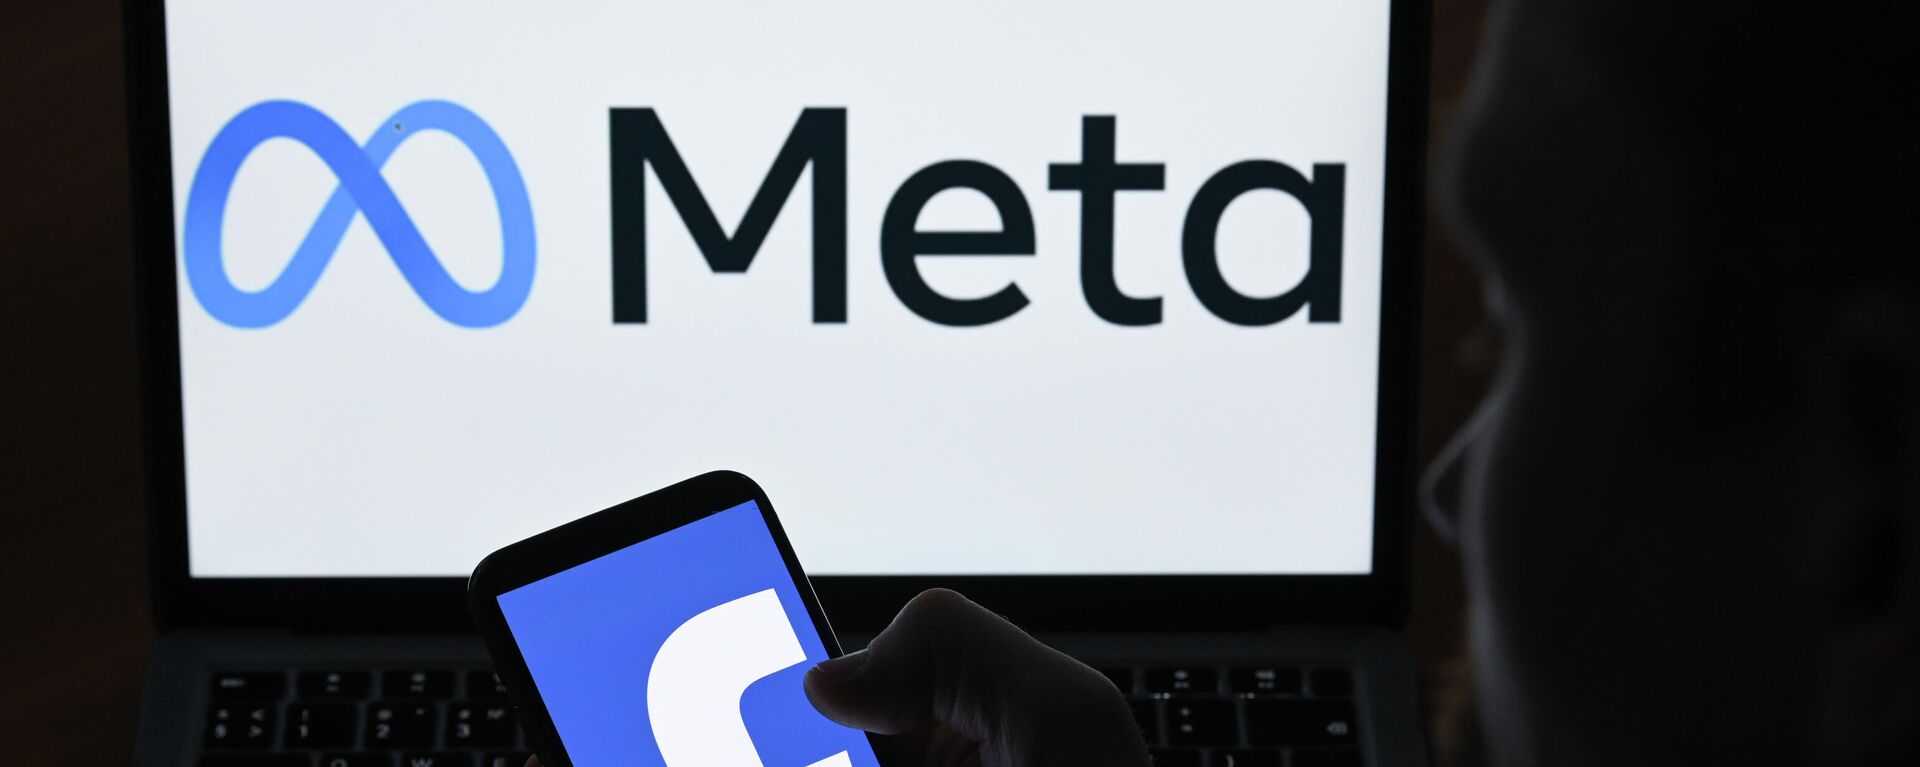 Логотипы компании Facebook и Meta на экранах смартфона и монитора - Sputnik Латвия, 1920, 21.03.2022